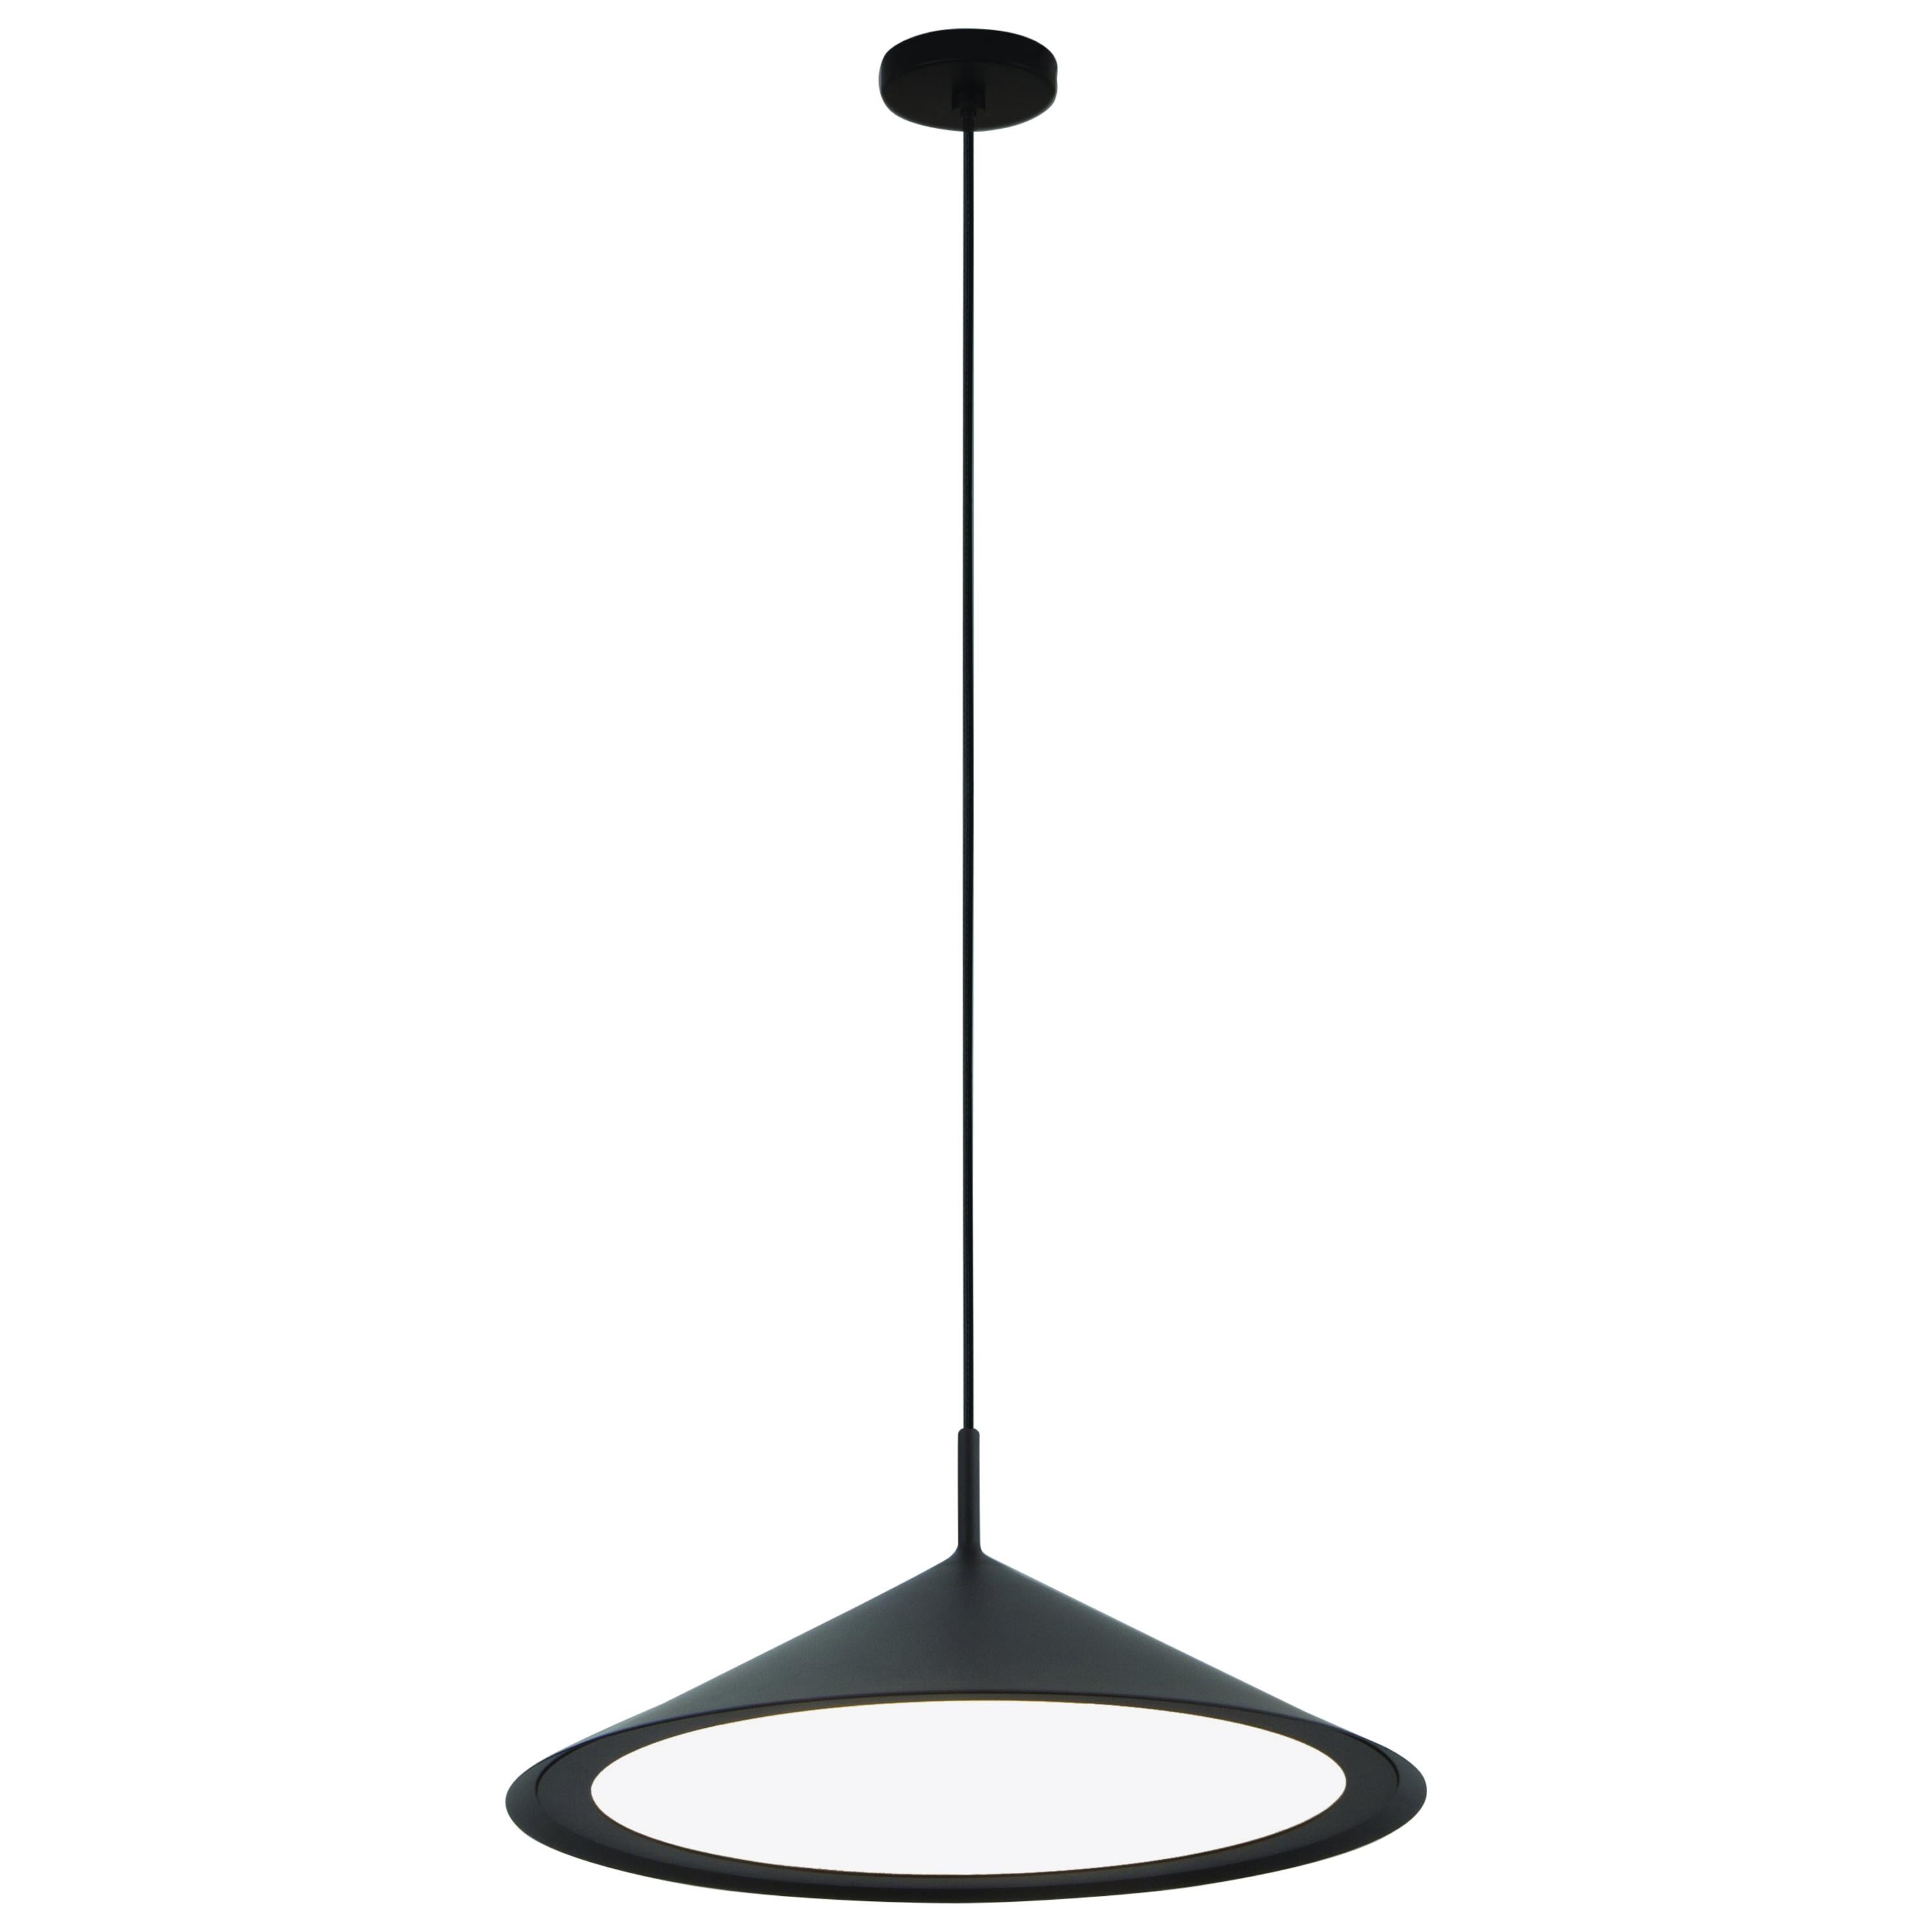 GORDON Ceiling Lamp Conical Diffuser in Matte Black by Corrado Dotti For Sale